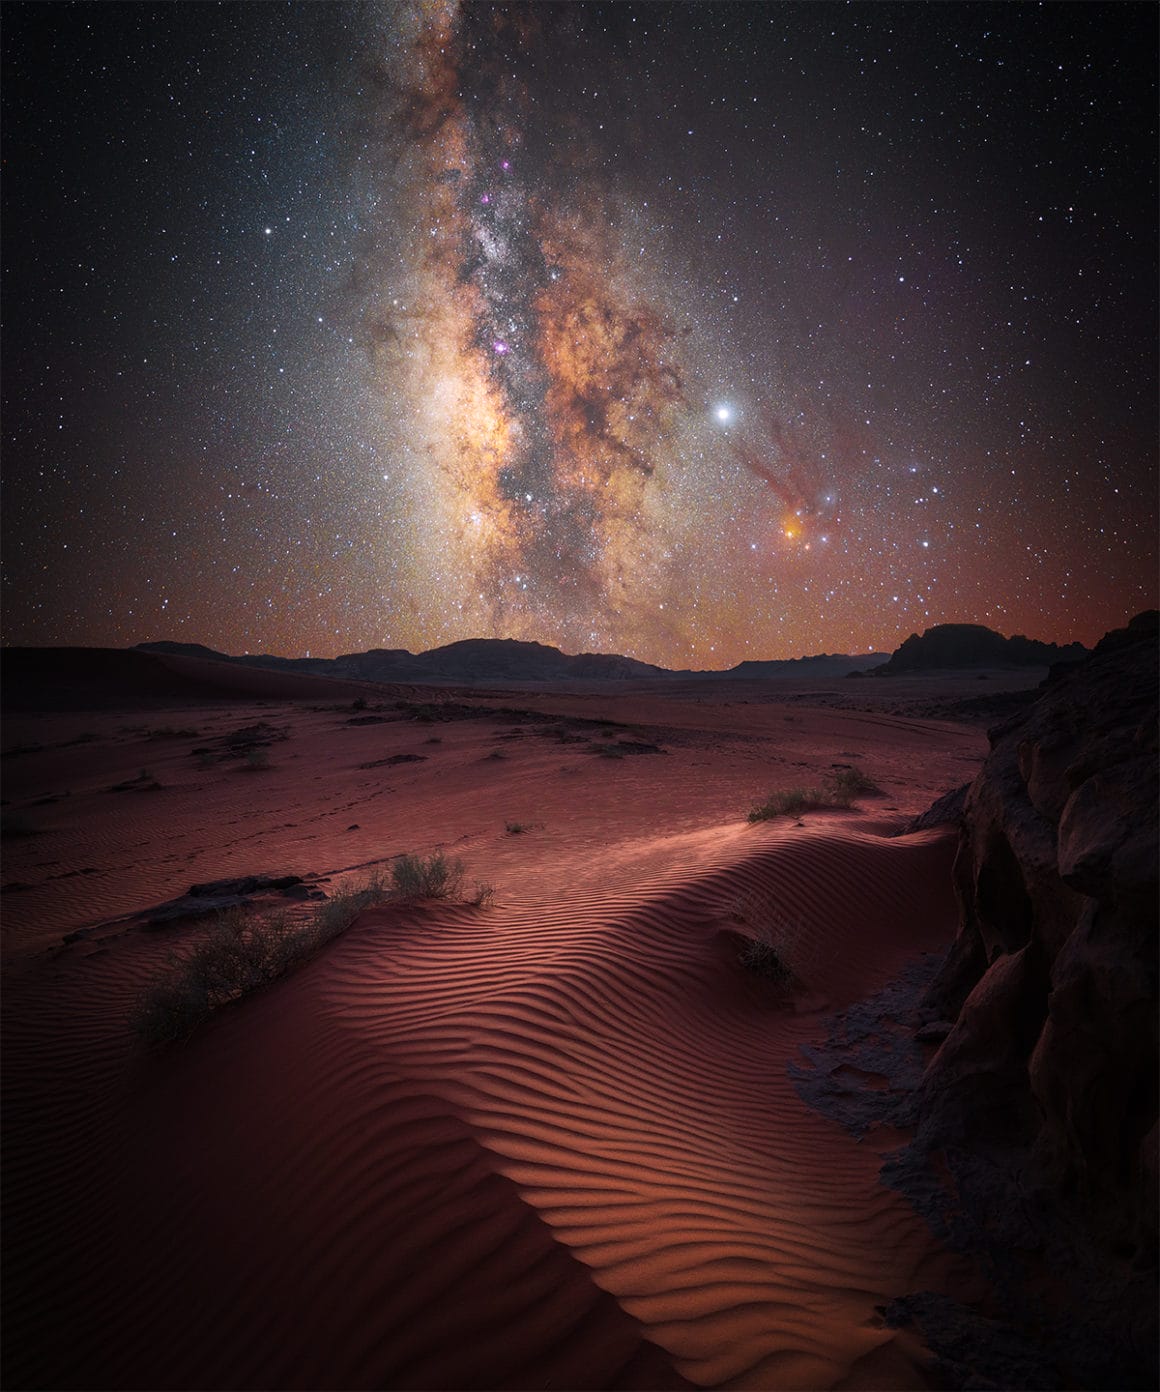 Le ciel étoilé du désert de Jordanie par Stefan Leibermann, finaliste allemand de la catégorie « skyscapes »